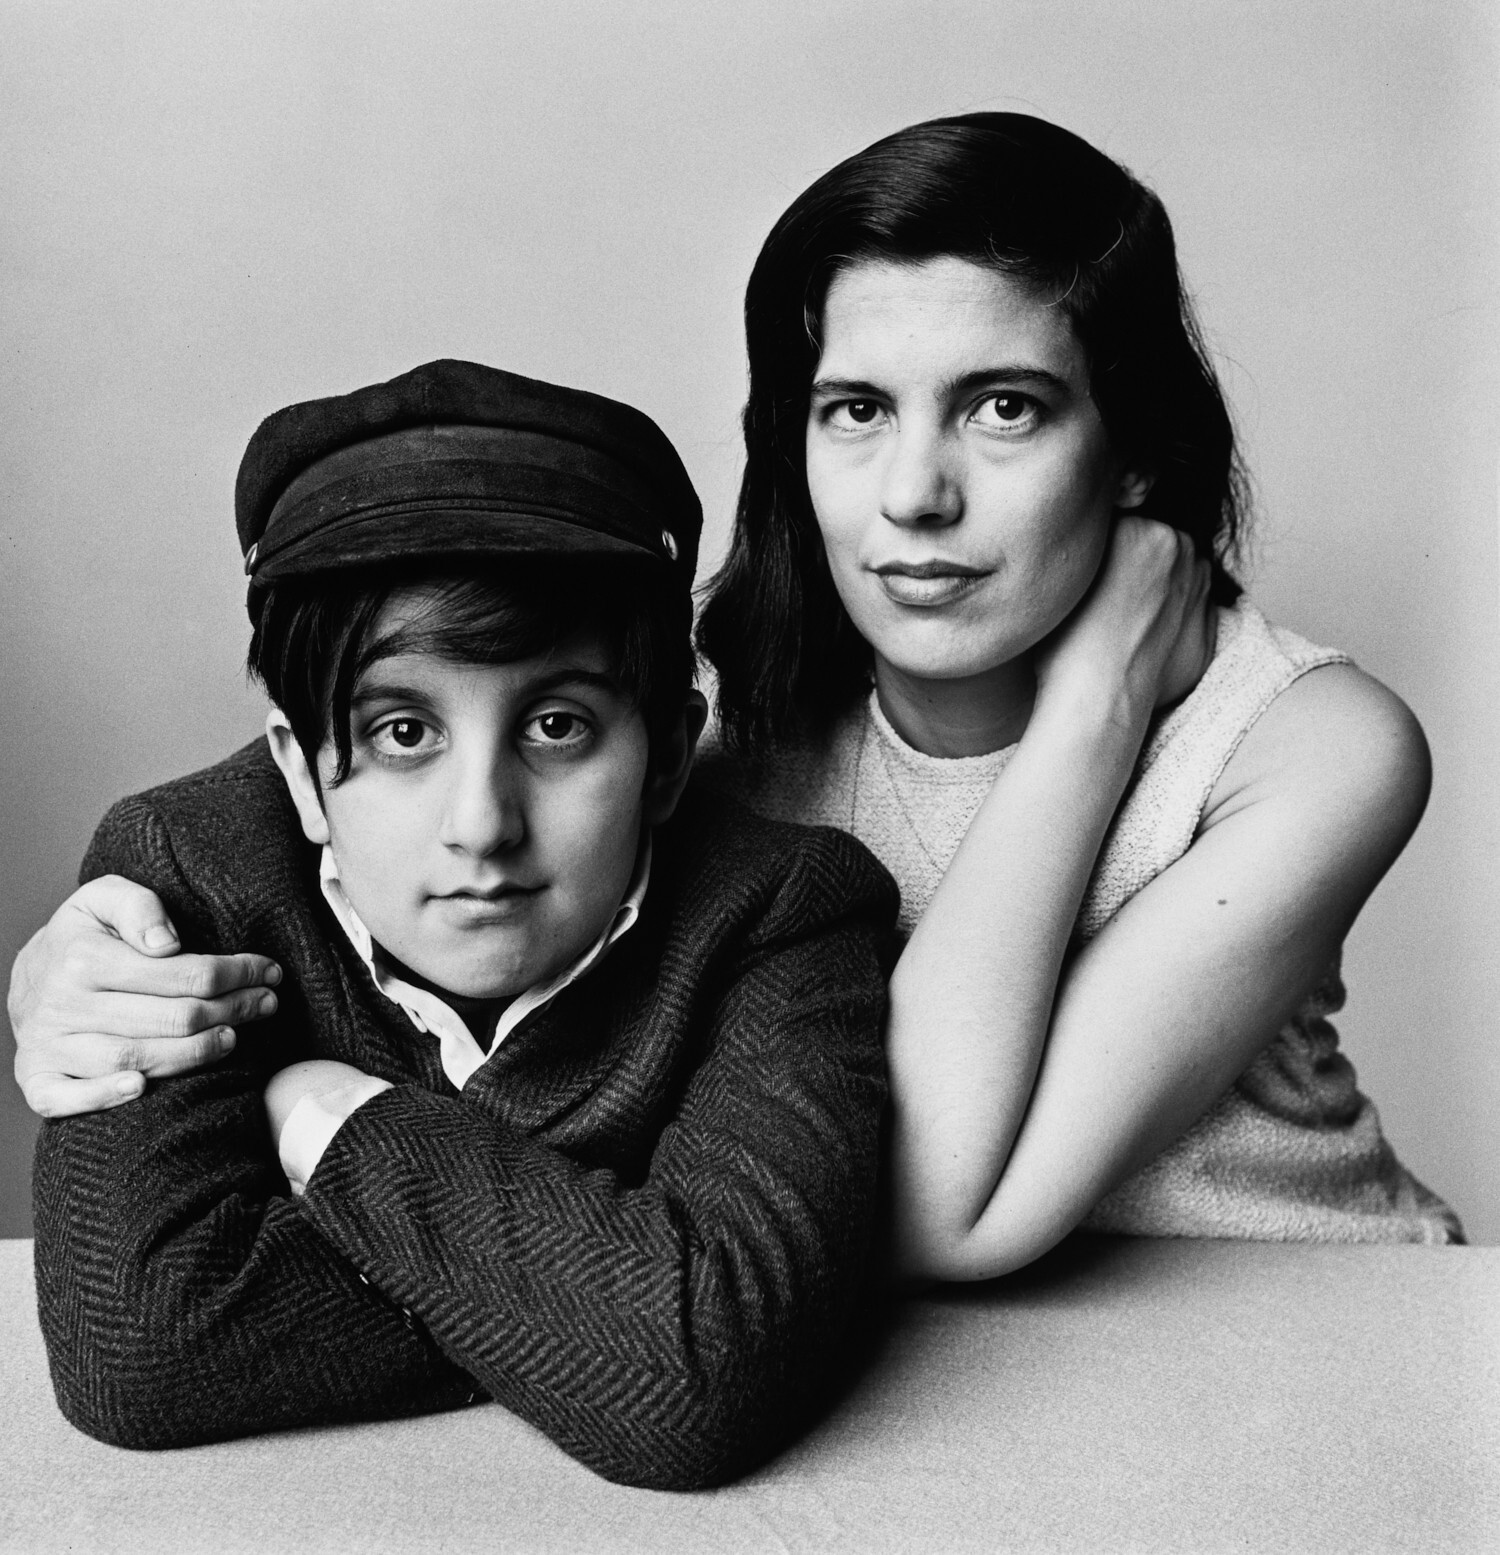 Сьюзан Зонтаг и сын, Дэвид Зонтаг Рифф, Нью-Йорк, 1966 г. Фотограф Ирвин Пенн